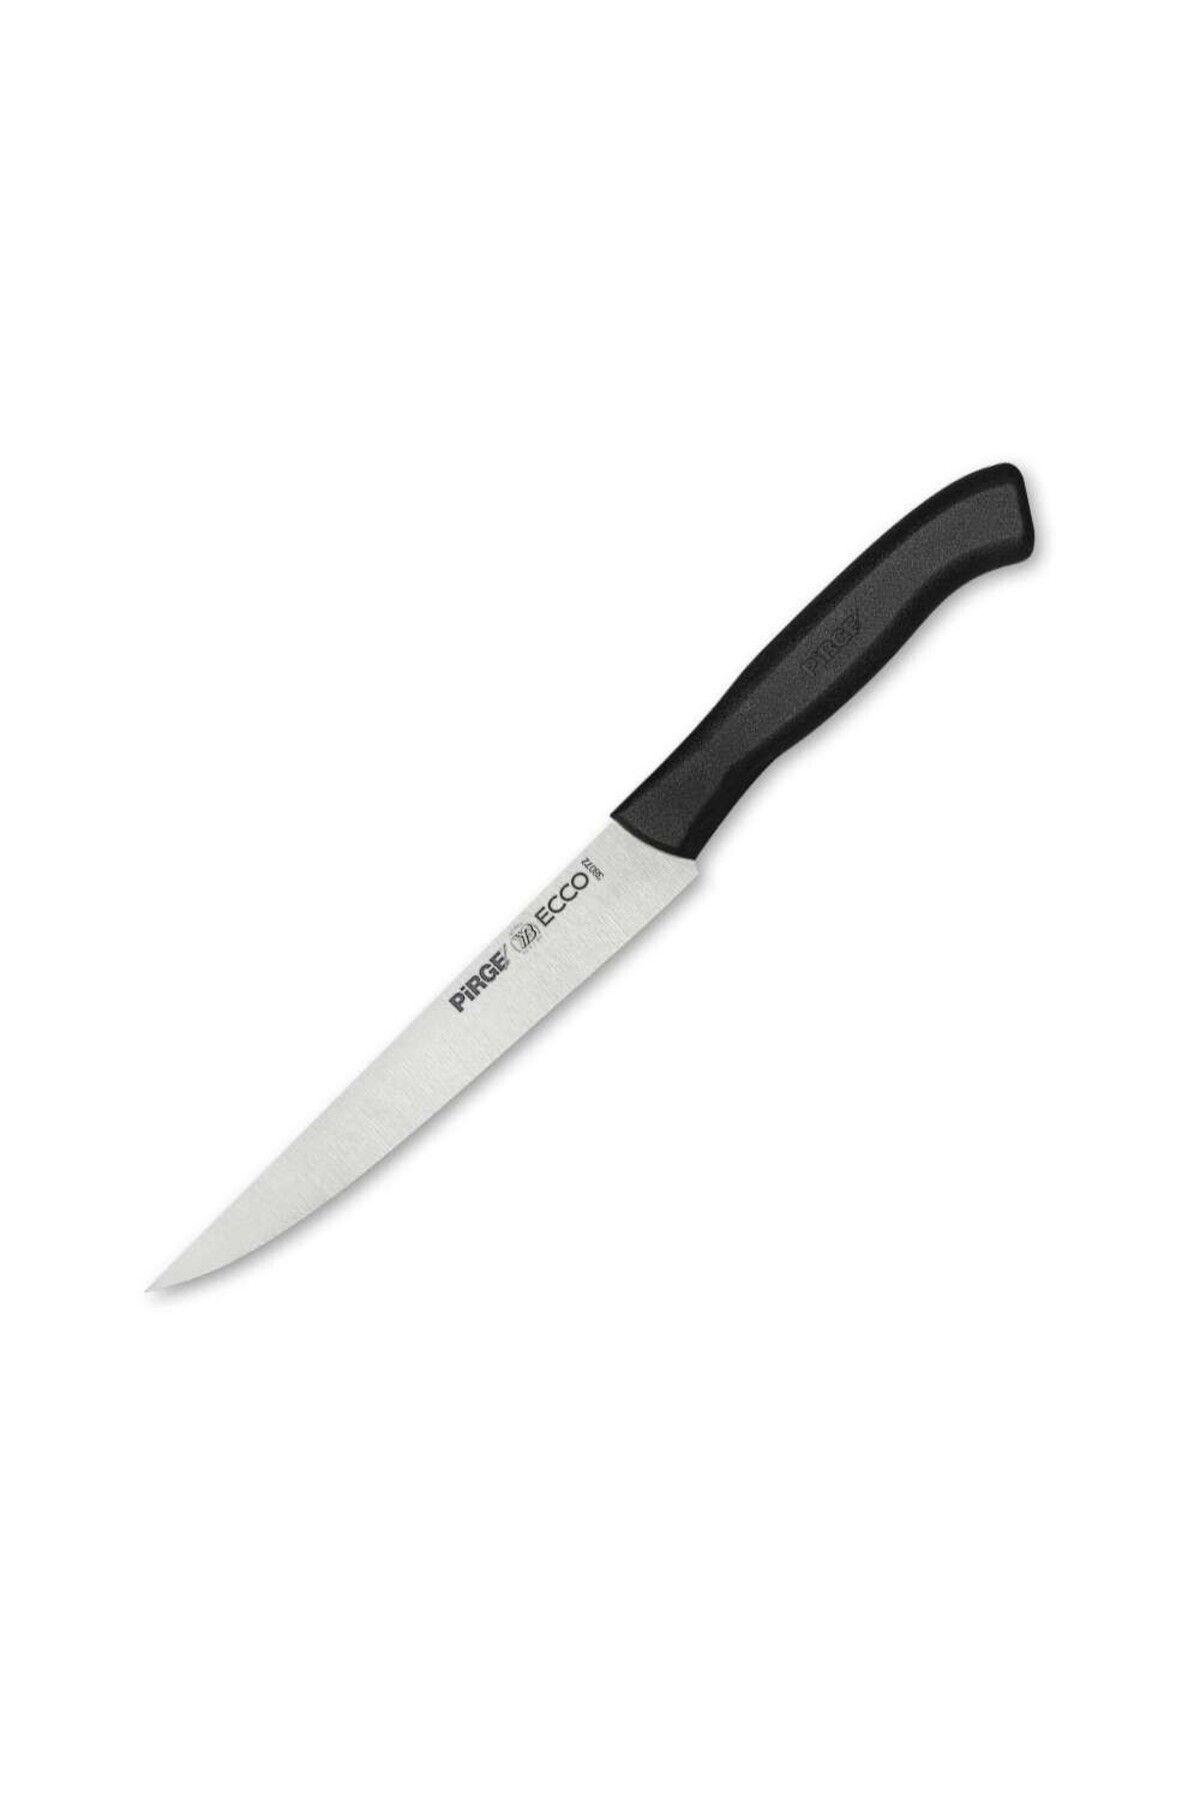 Pirge Ecco Peynir Bıçağı 15,5 cm YEŞİL - 38071